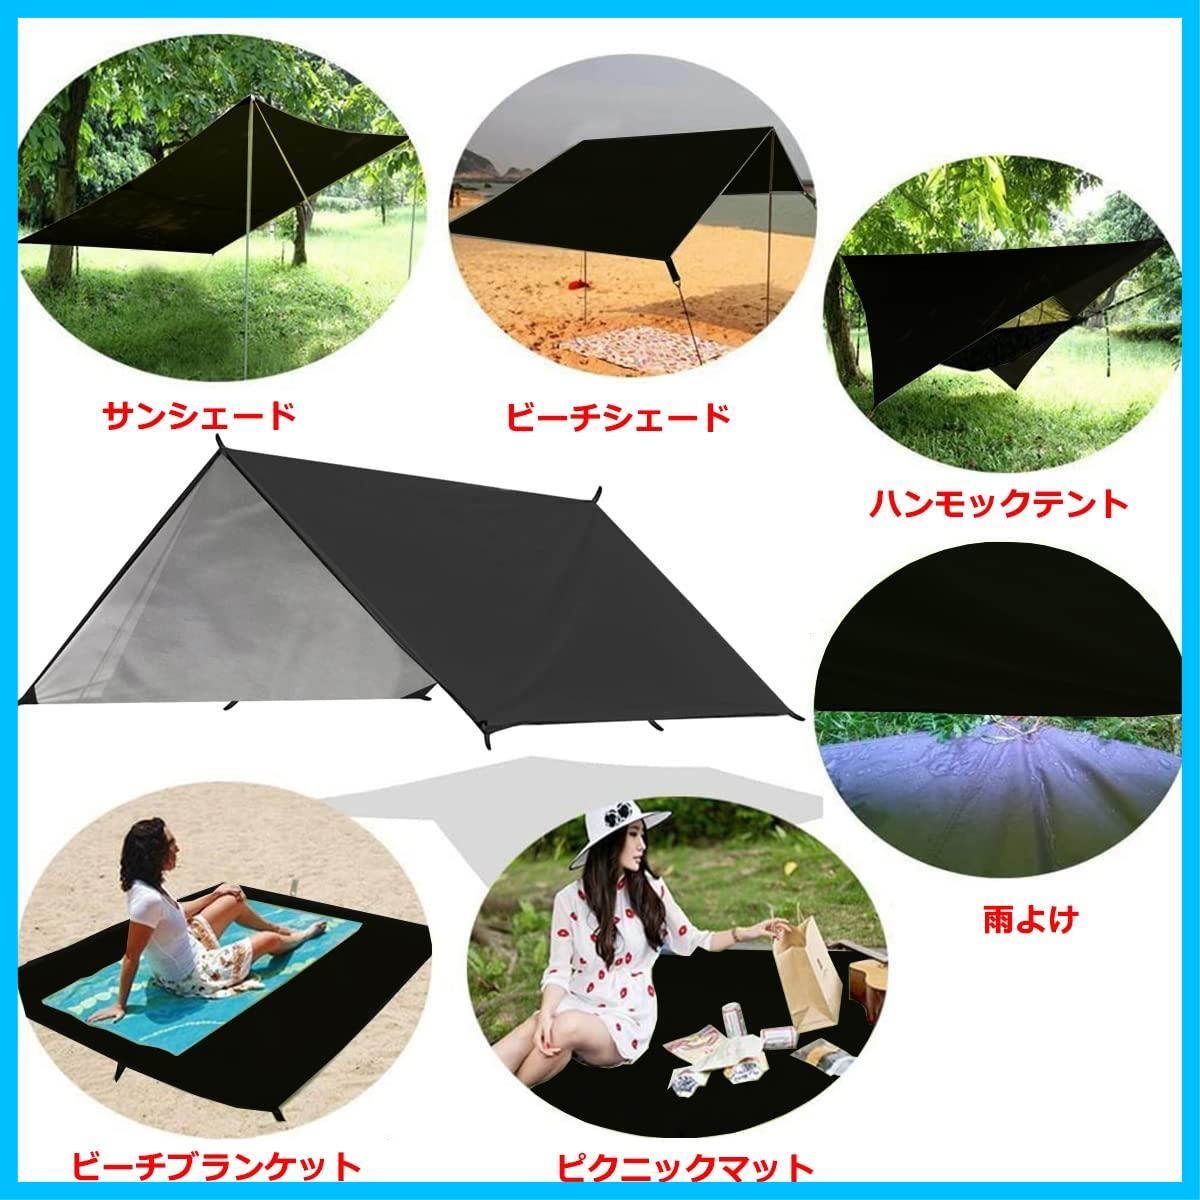 特価限定品超大型キャンプタープ 防水・UVカット 軽量で携帯便利 テント・タープ